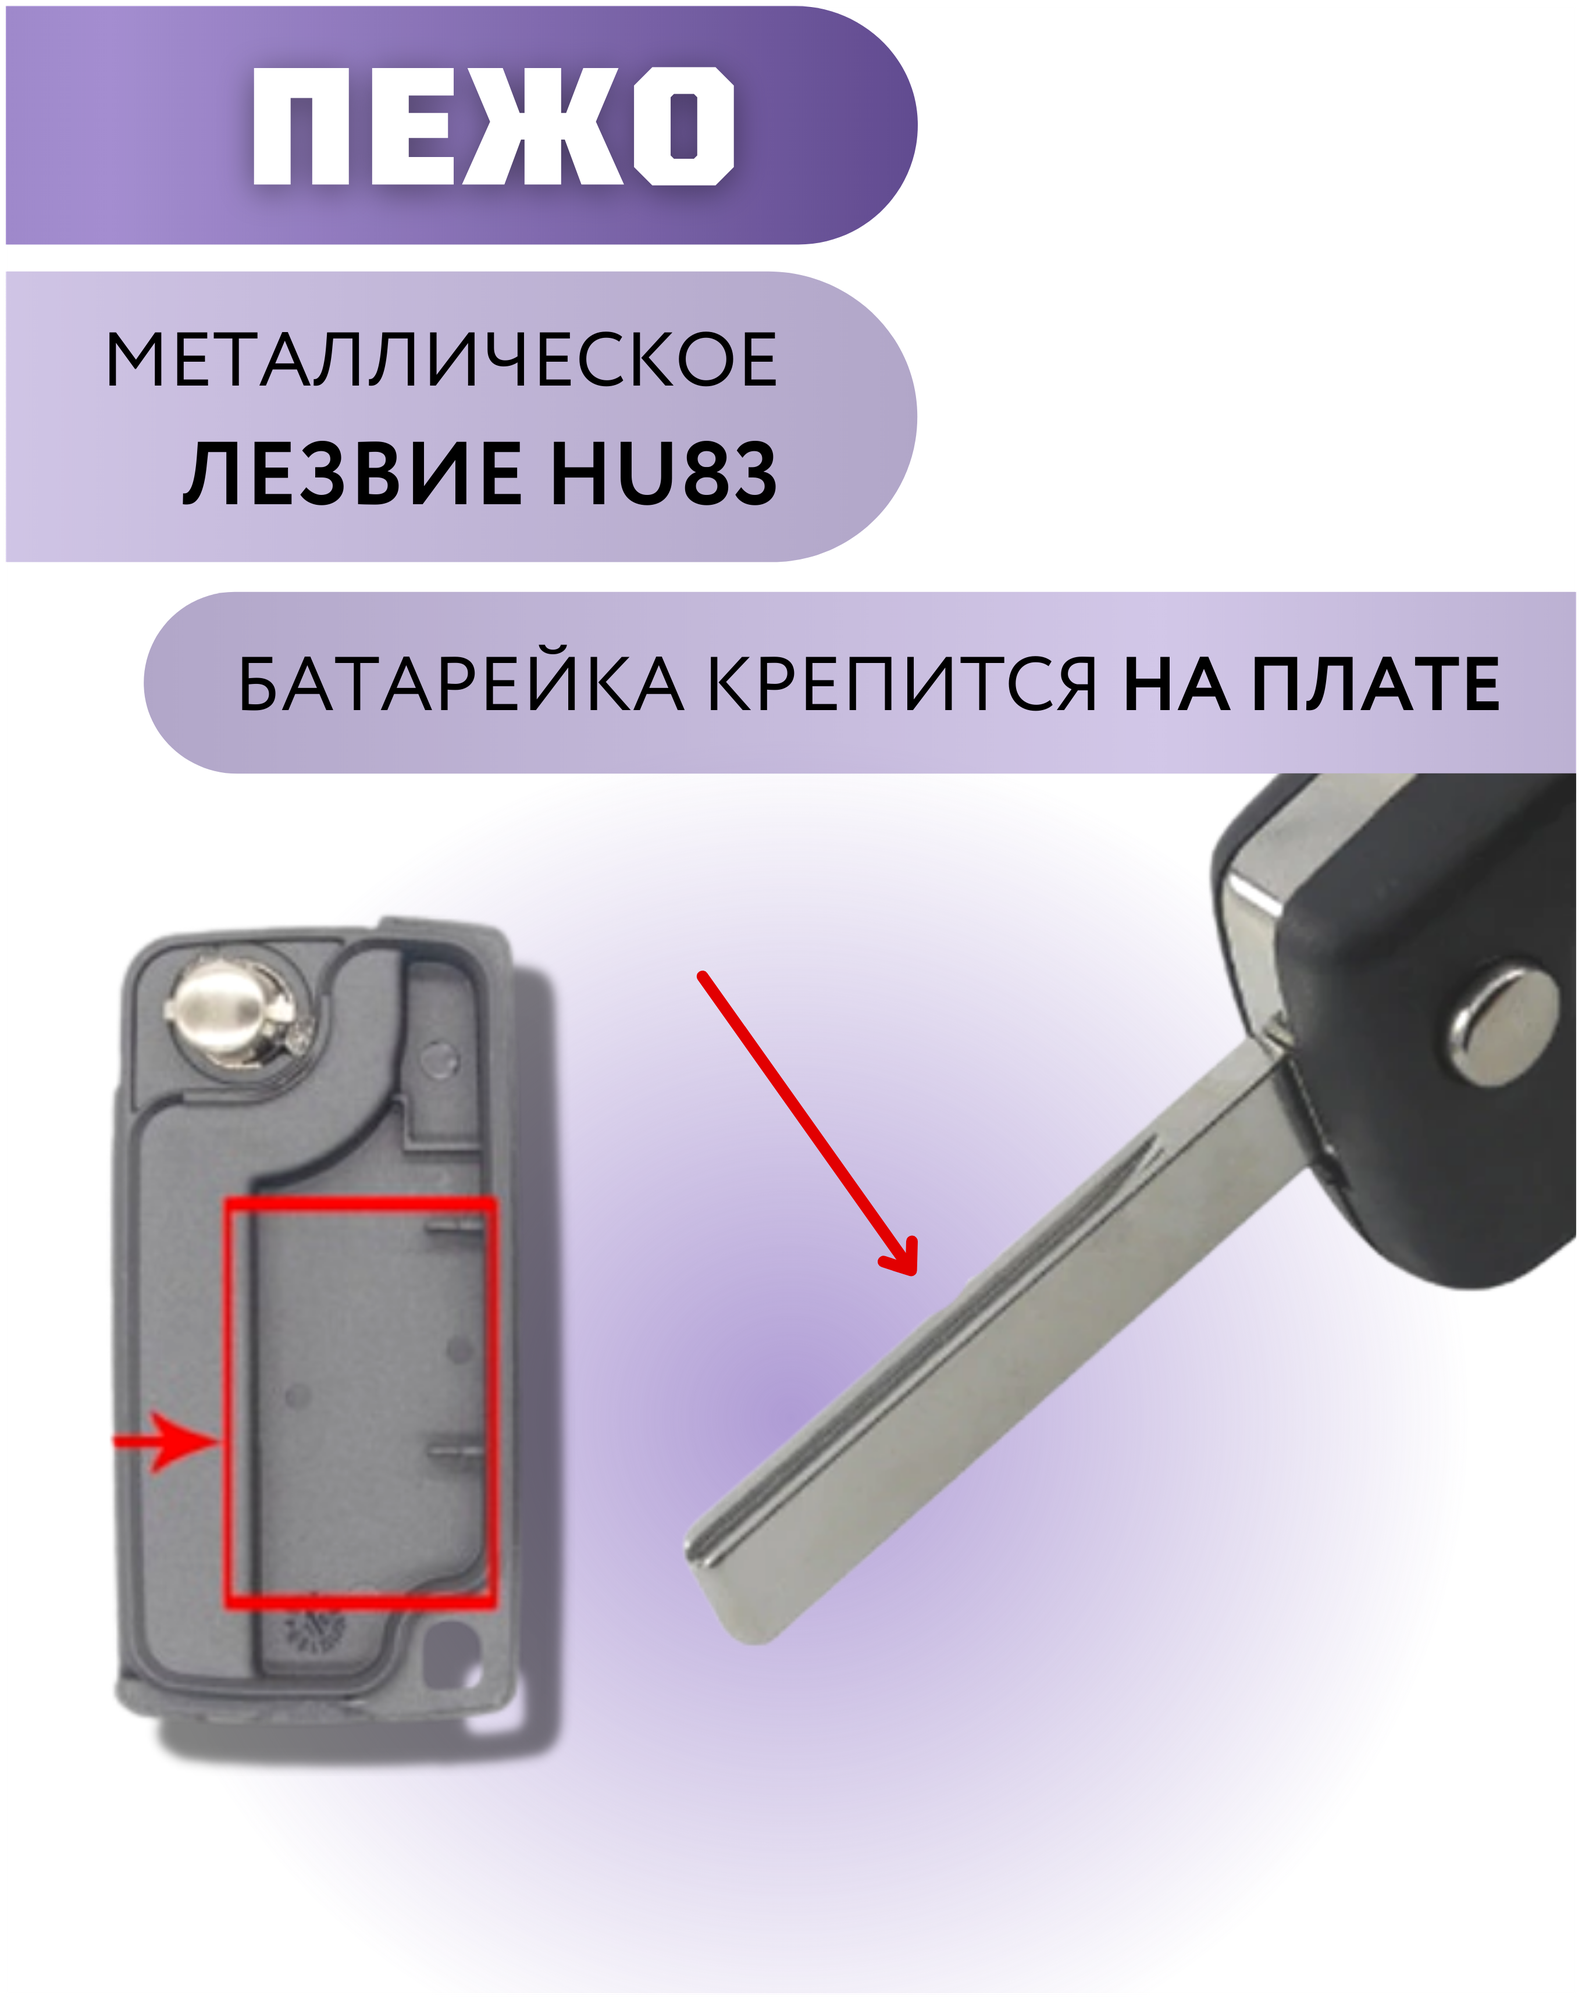 Корпус ключа зажигания для Пежо корпус ключа для Peugeot 2 кнопки батарейка на плате лезвие HU83